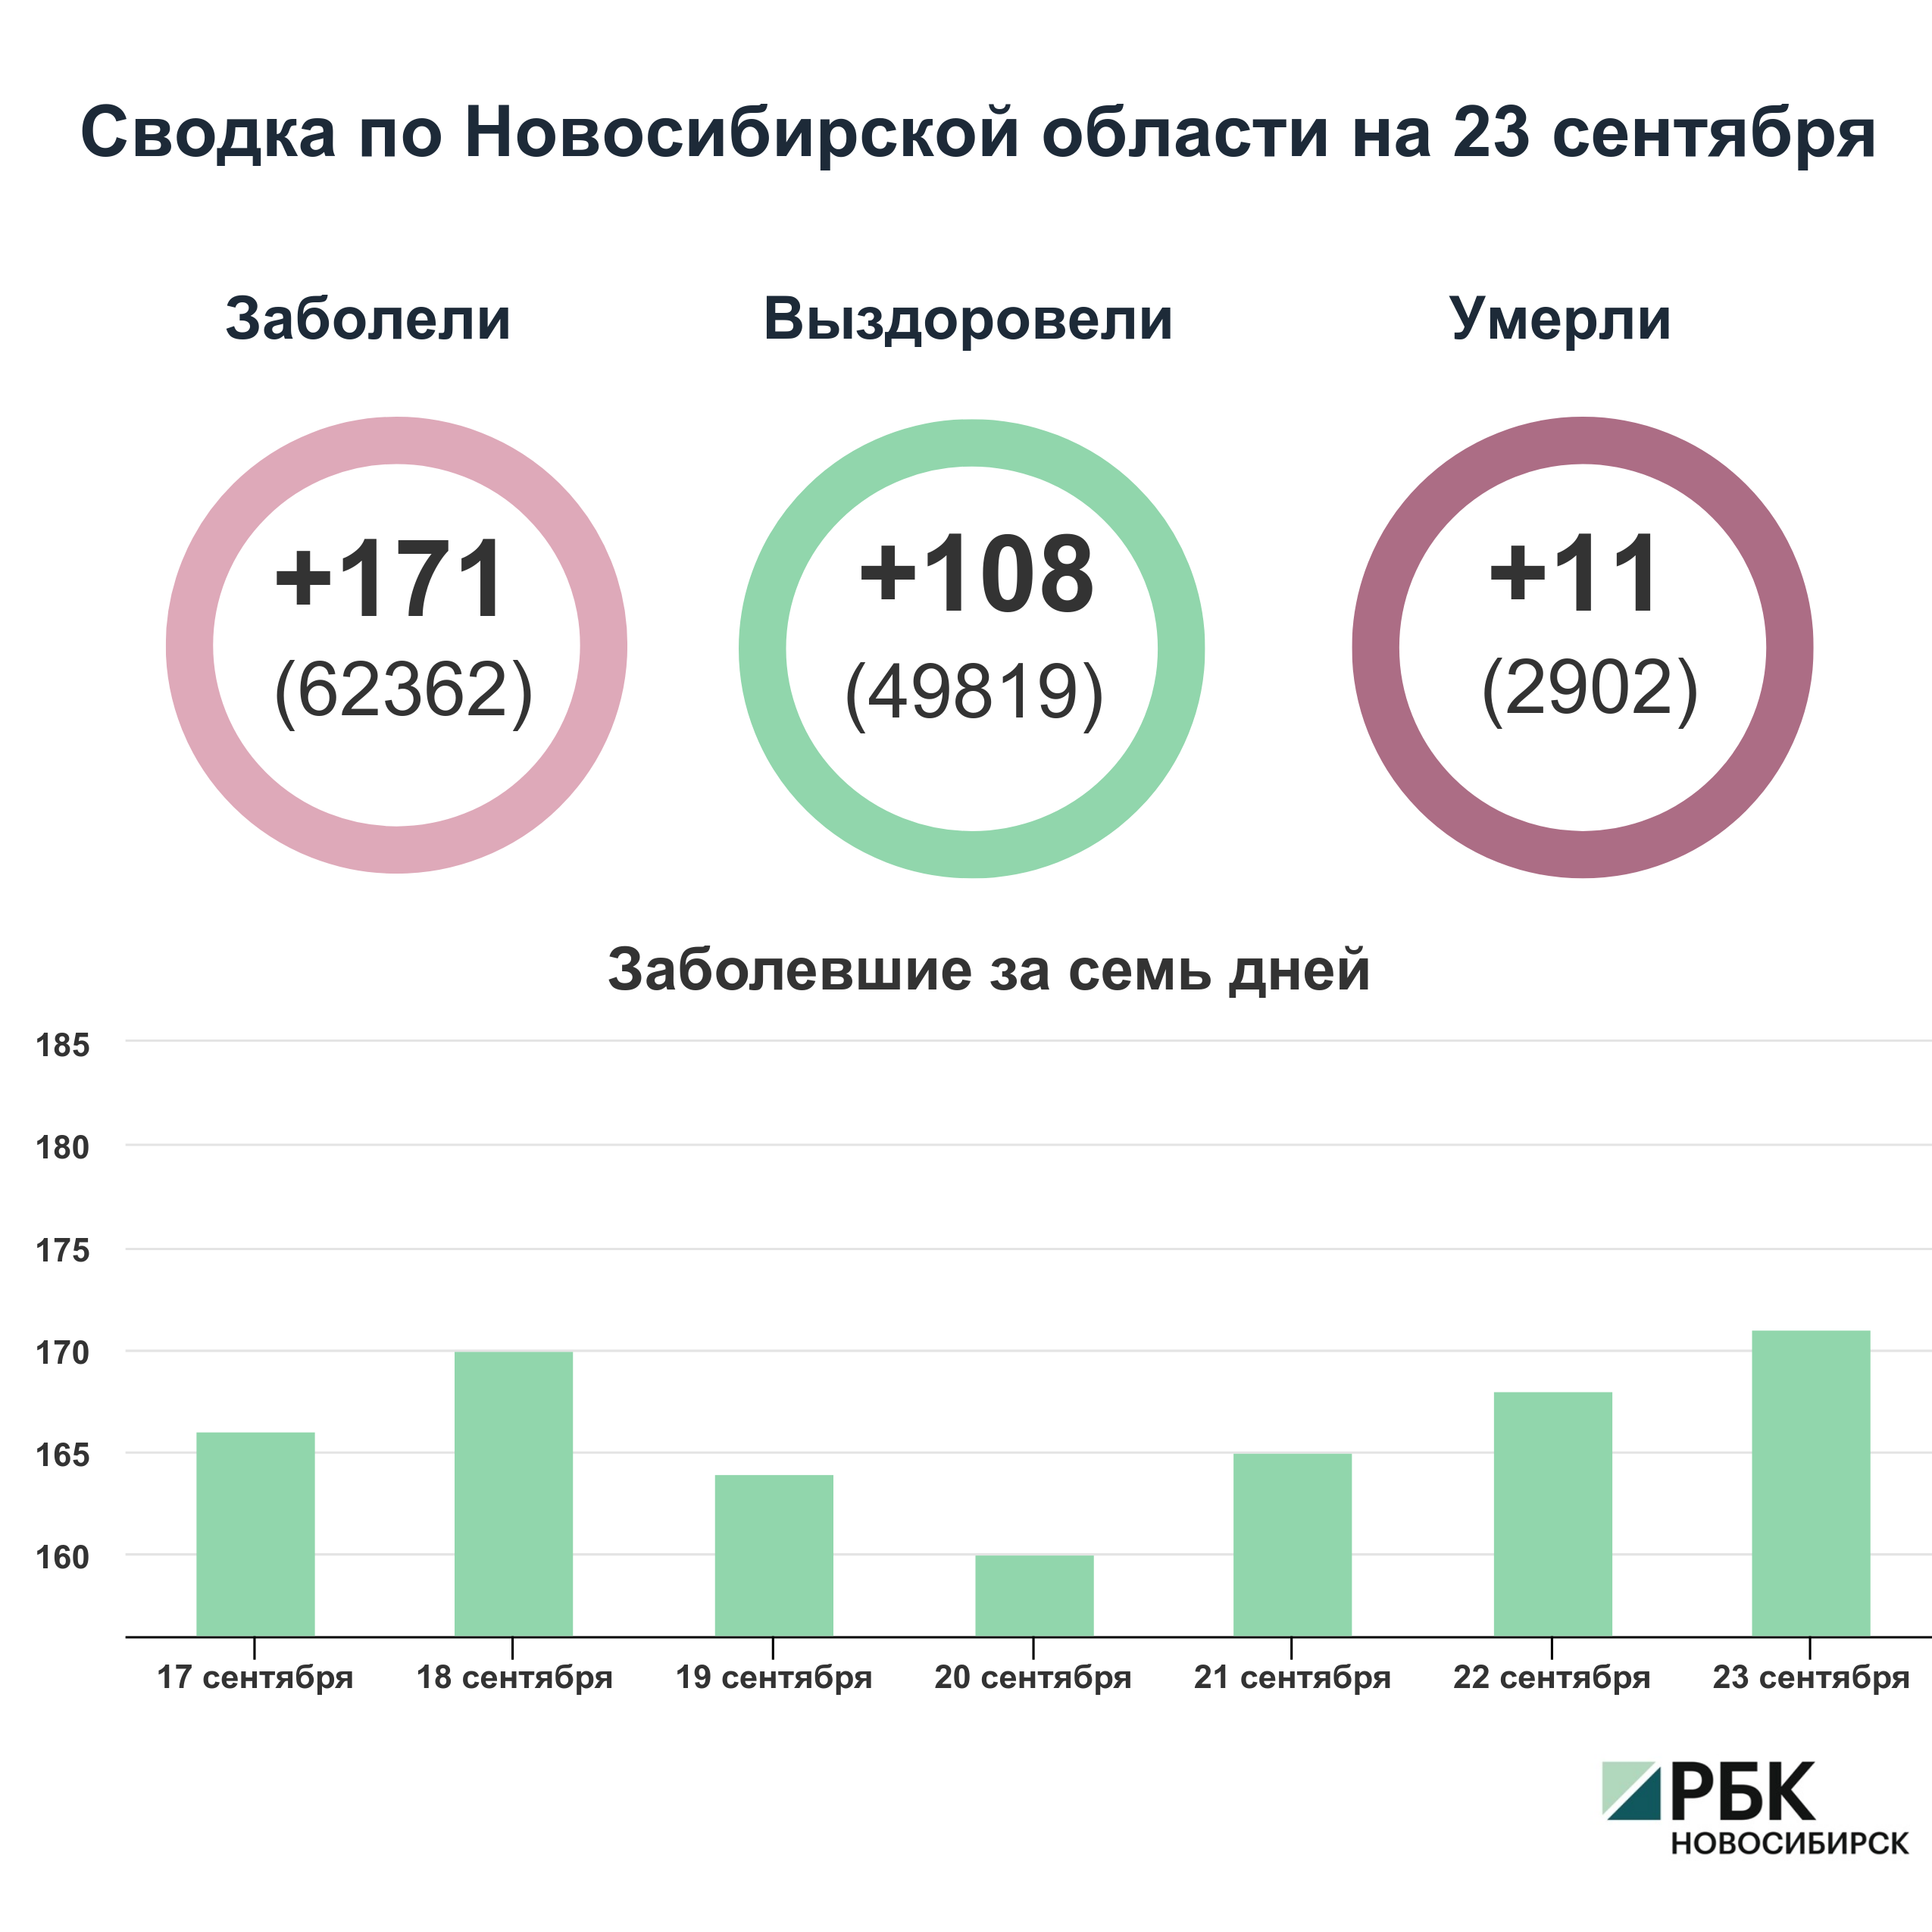 Коронавирус в Новосибирске: сводка на 23 сентября